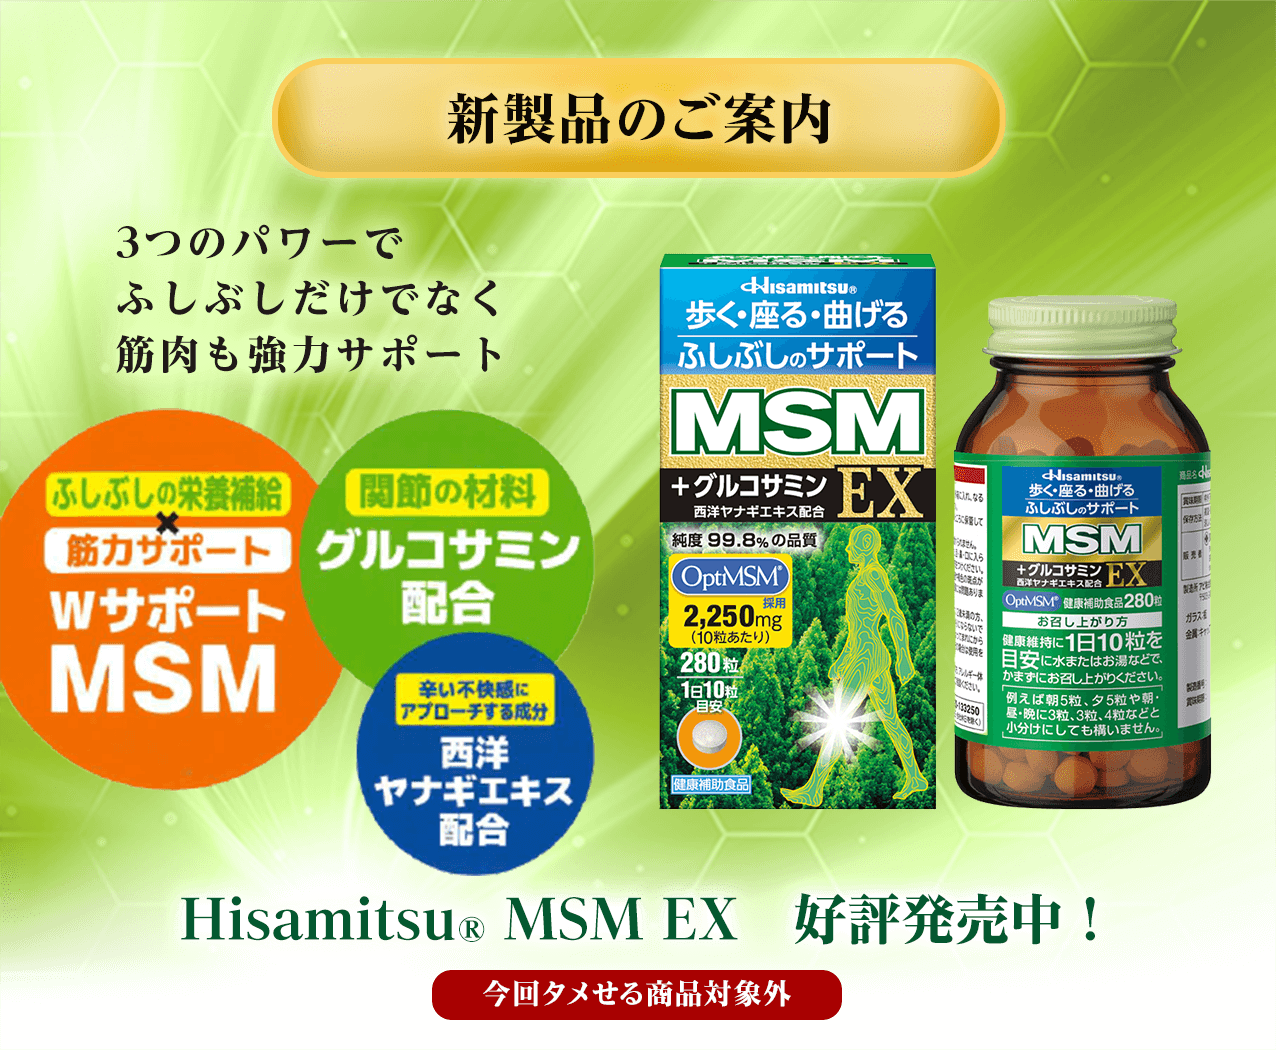 タメせる！久光製薬「Hisamitsu® MSM（14日分）」